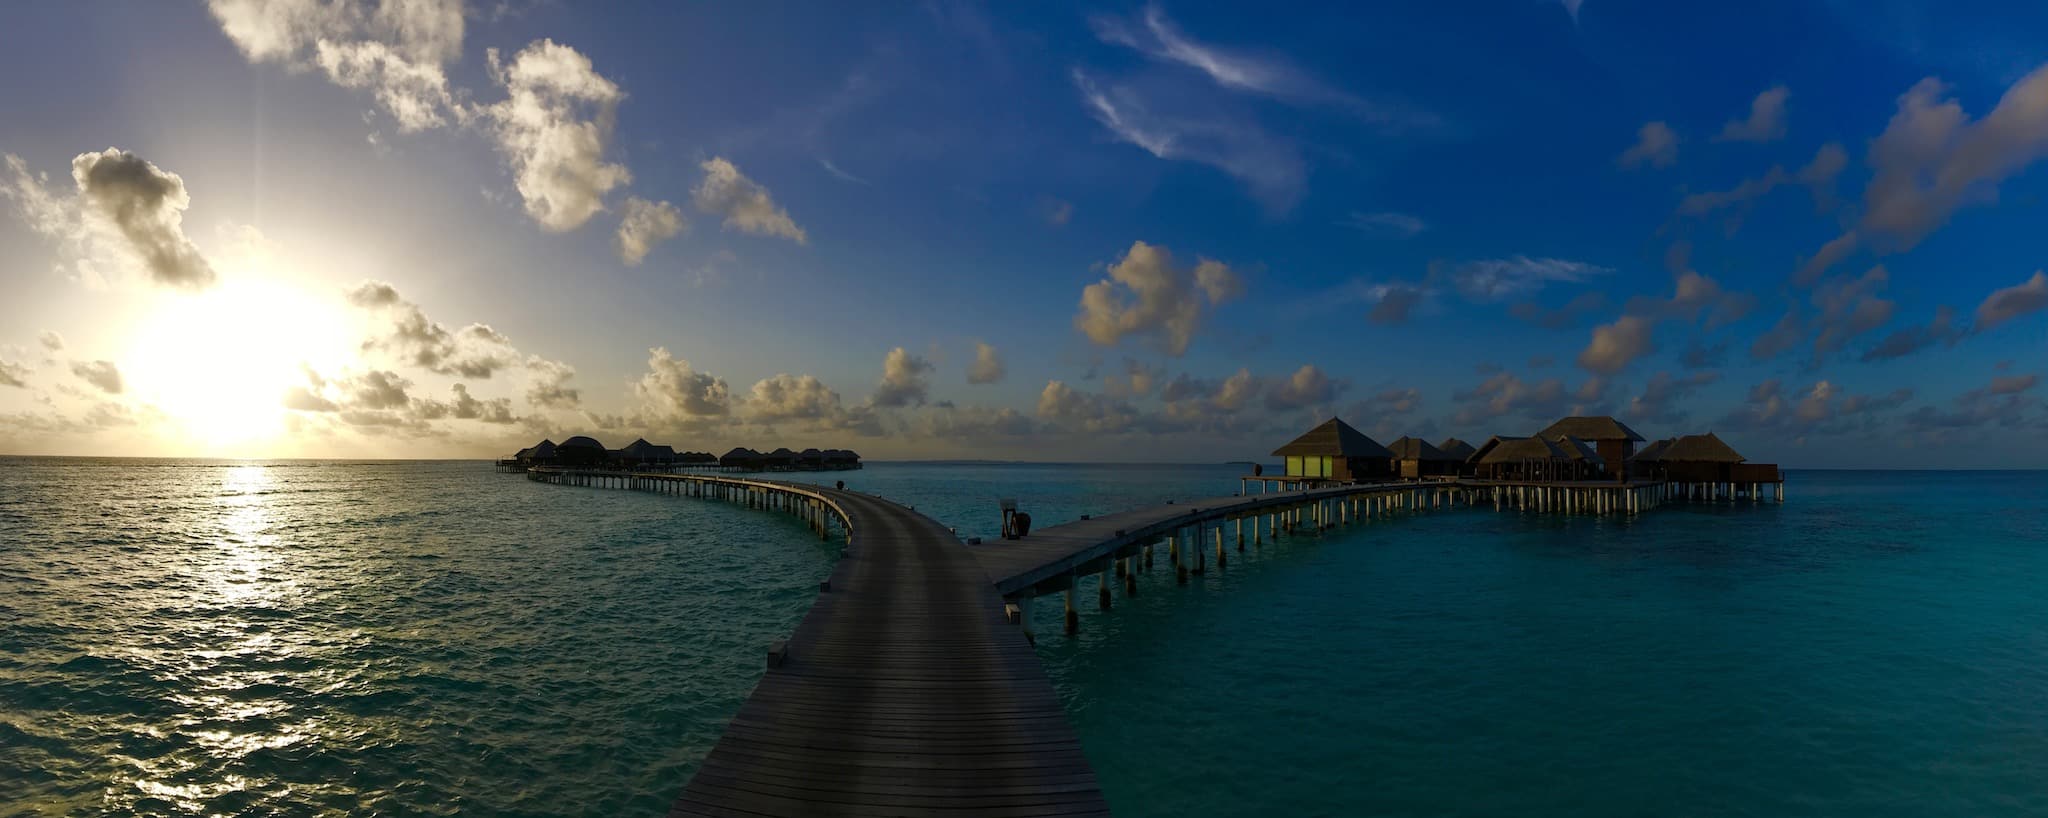 Merveilleuse île de rêve Coco Bodu Hithi : les Maldives sont une destination de rêve pour de nombreux vacanciers du monde entier. Photo : Sascha Tegtmeyer